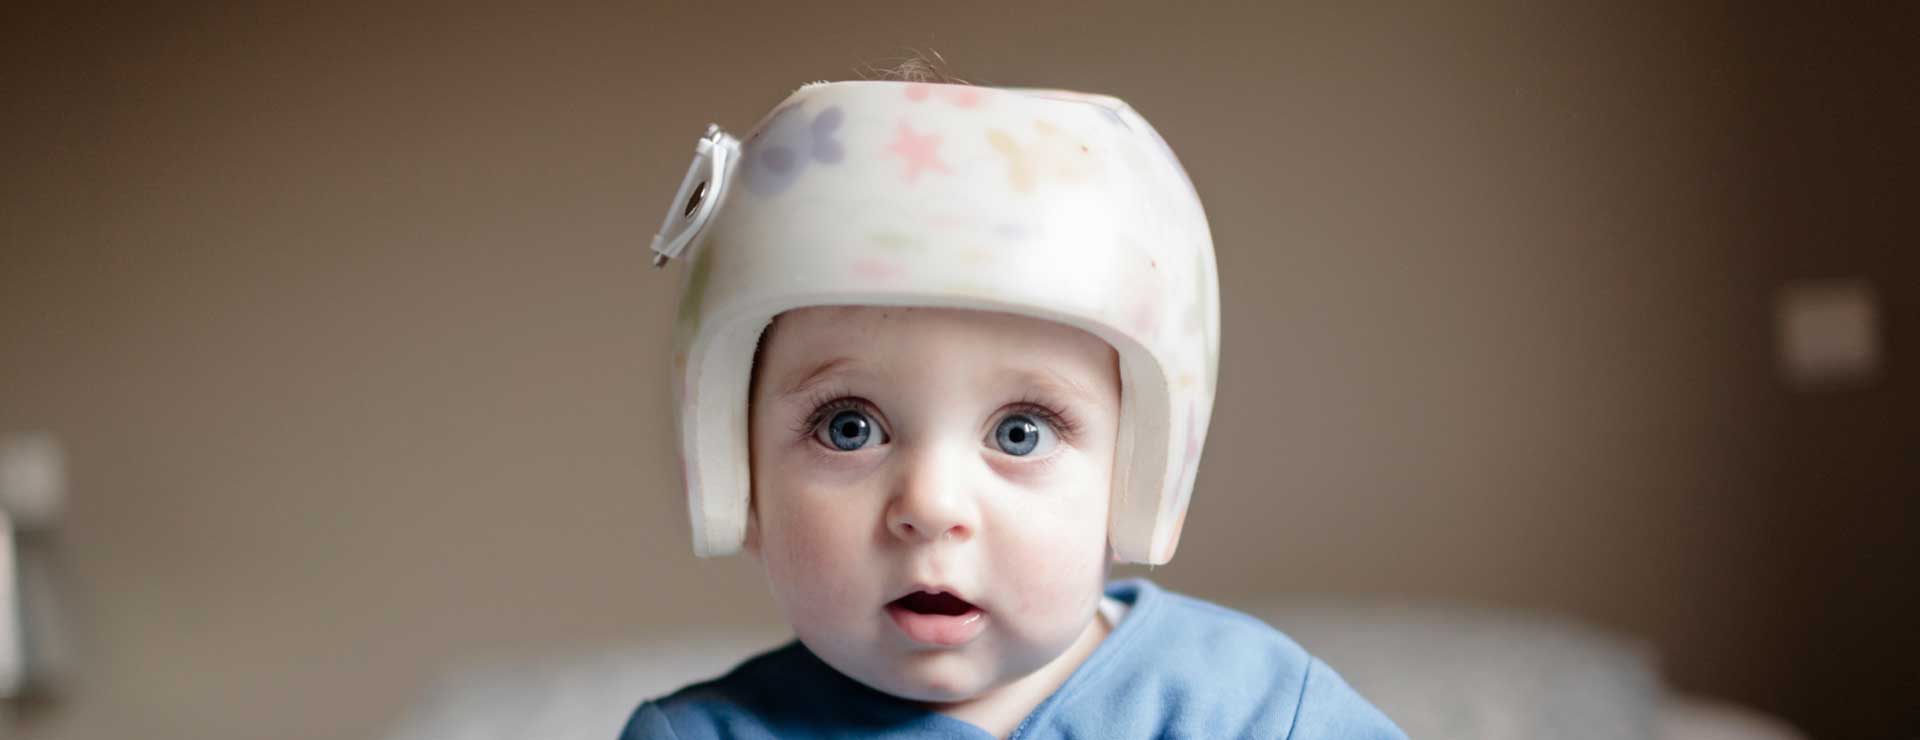 helmet for 3 years old girl